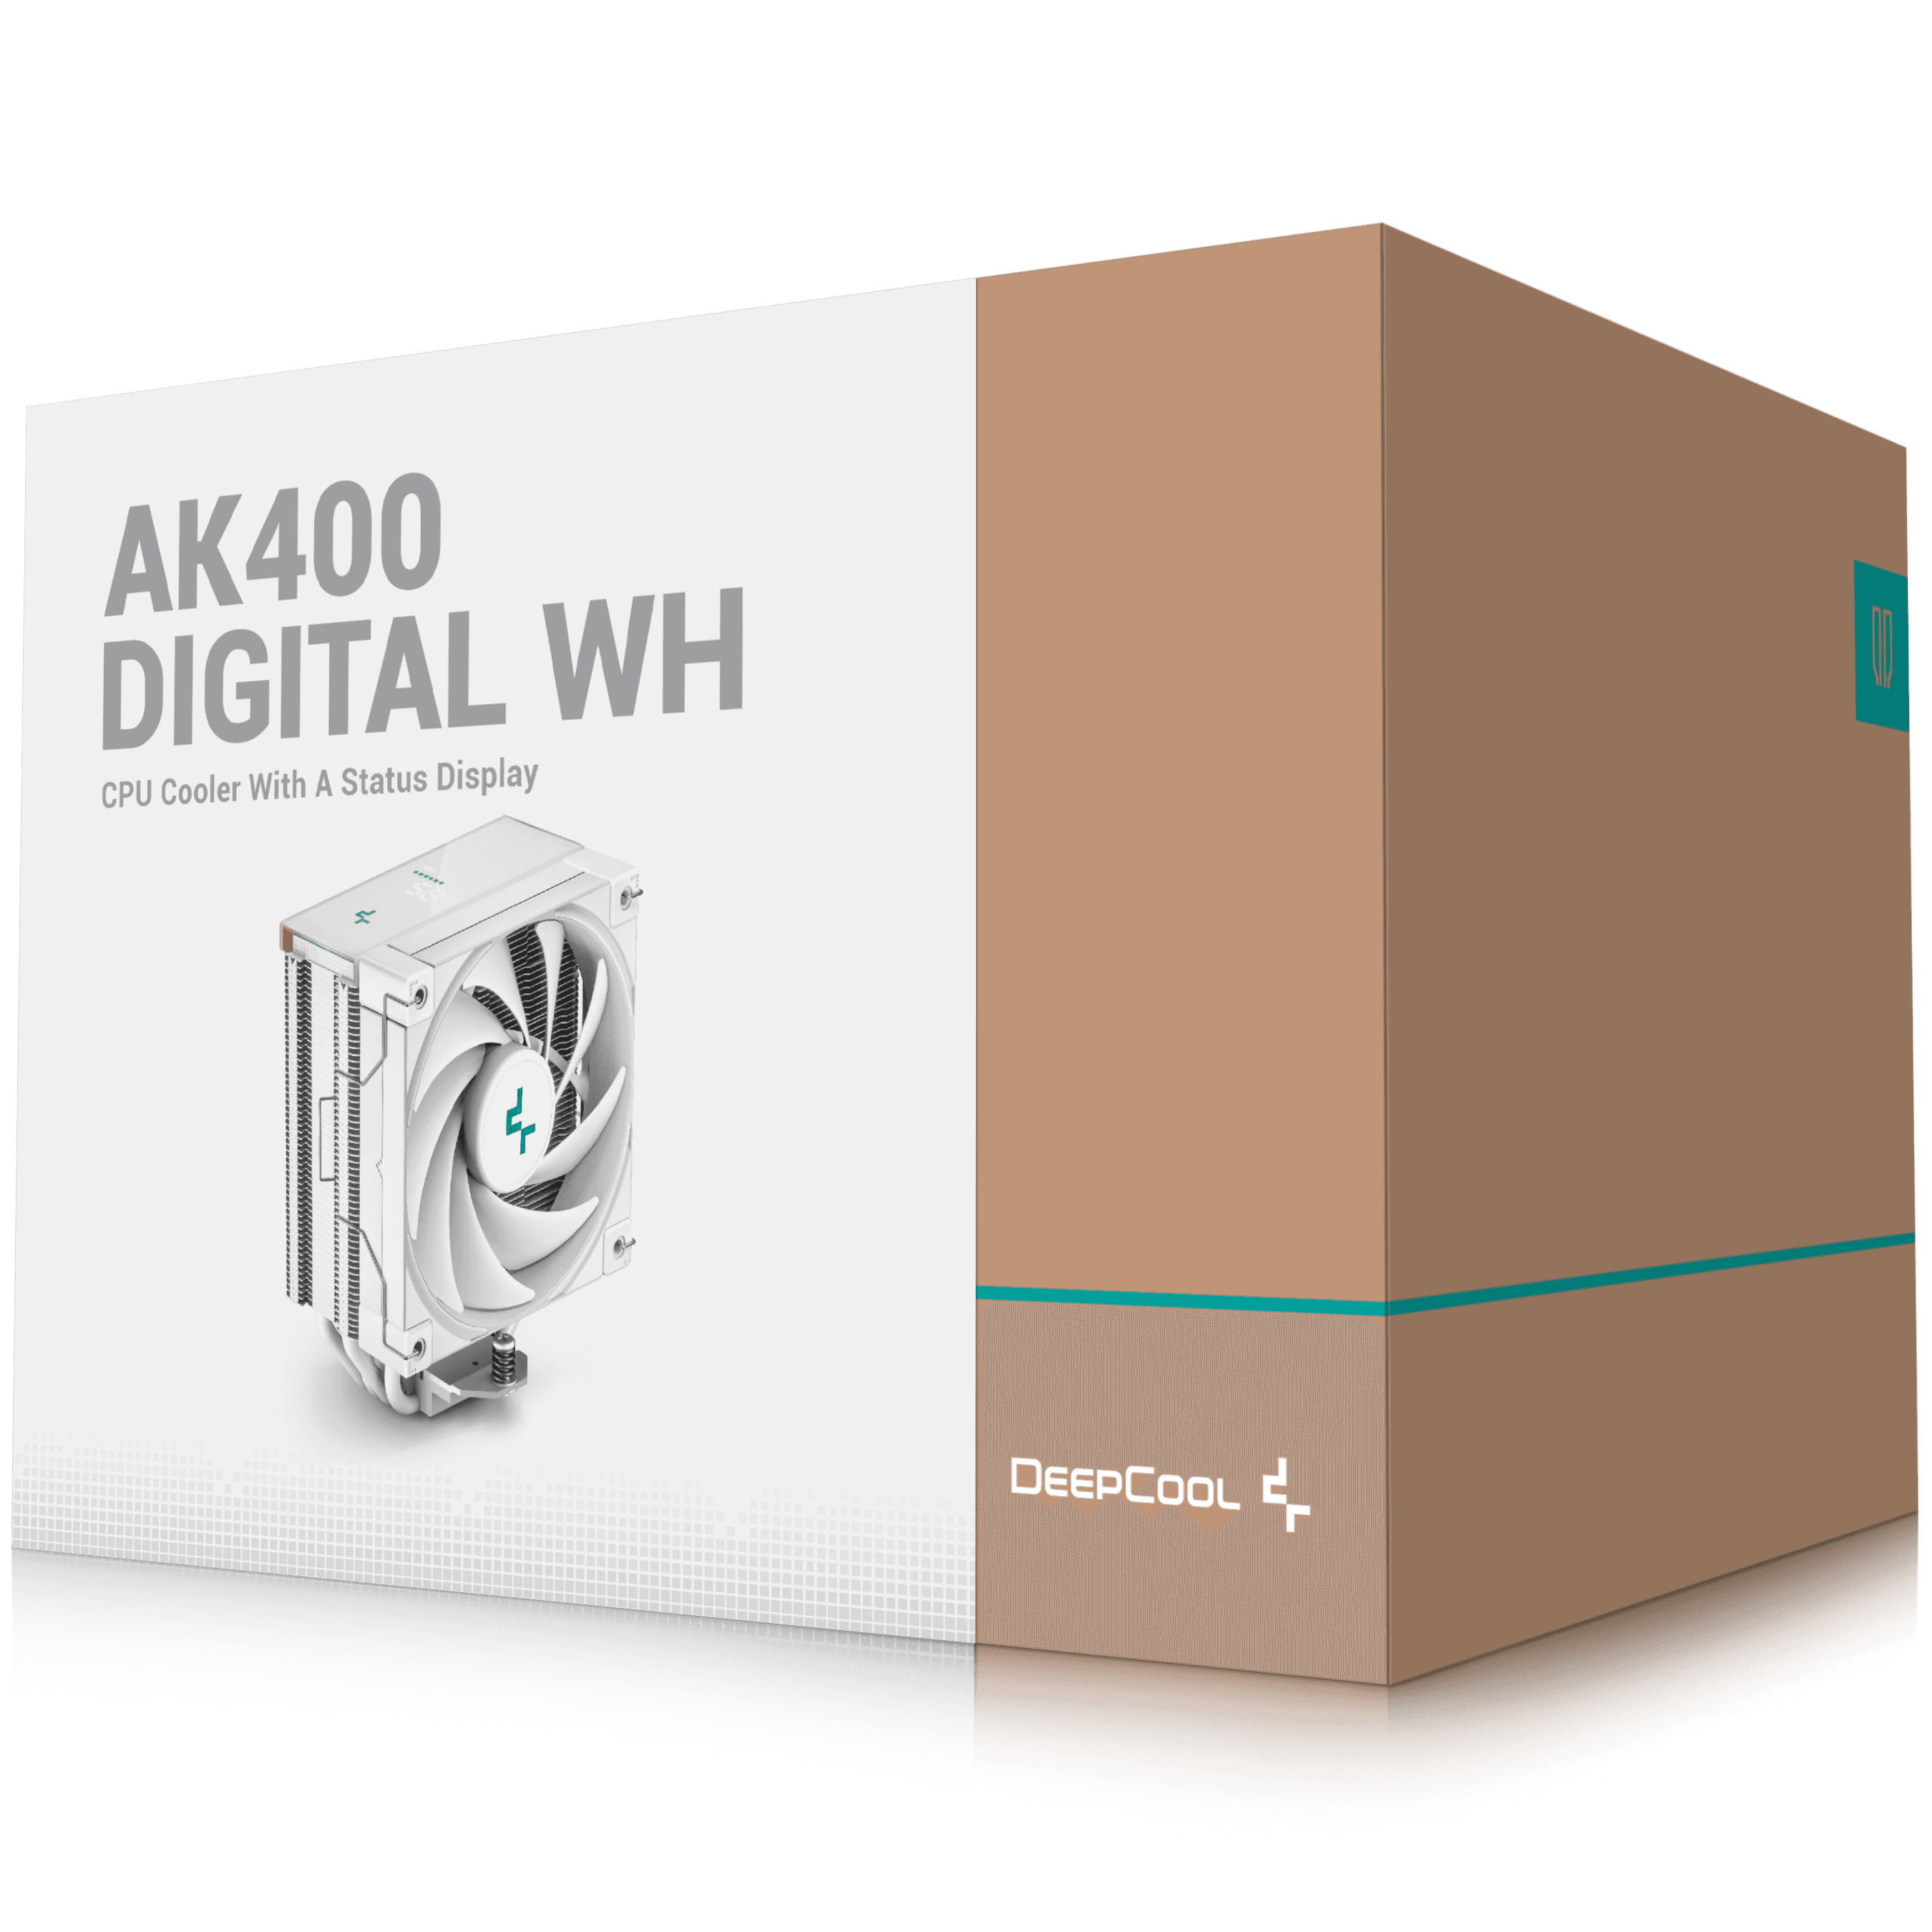 DeepCool - DeepCool AK400 Digital White CPU Cooler - 120mm